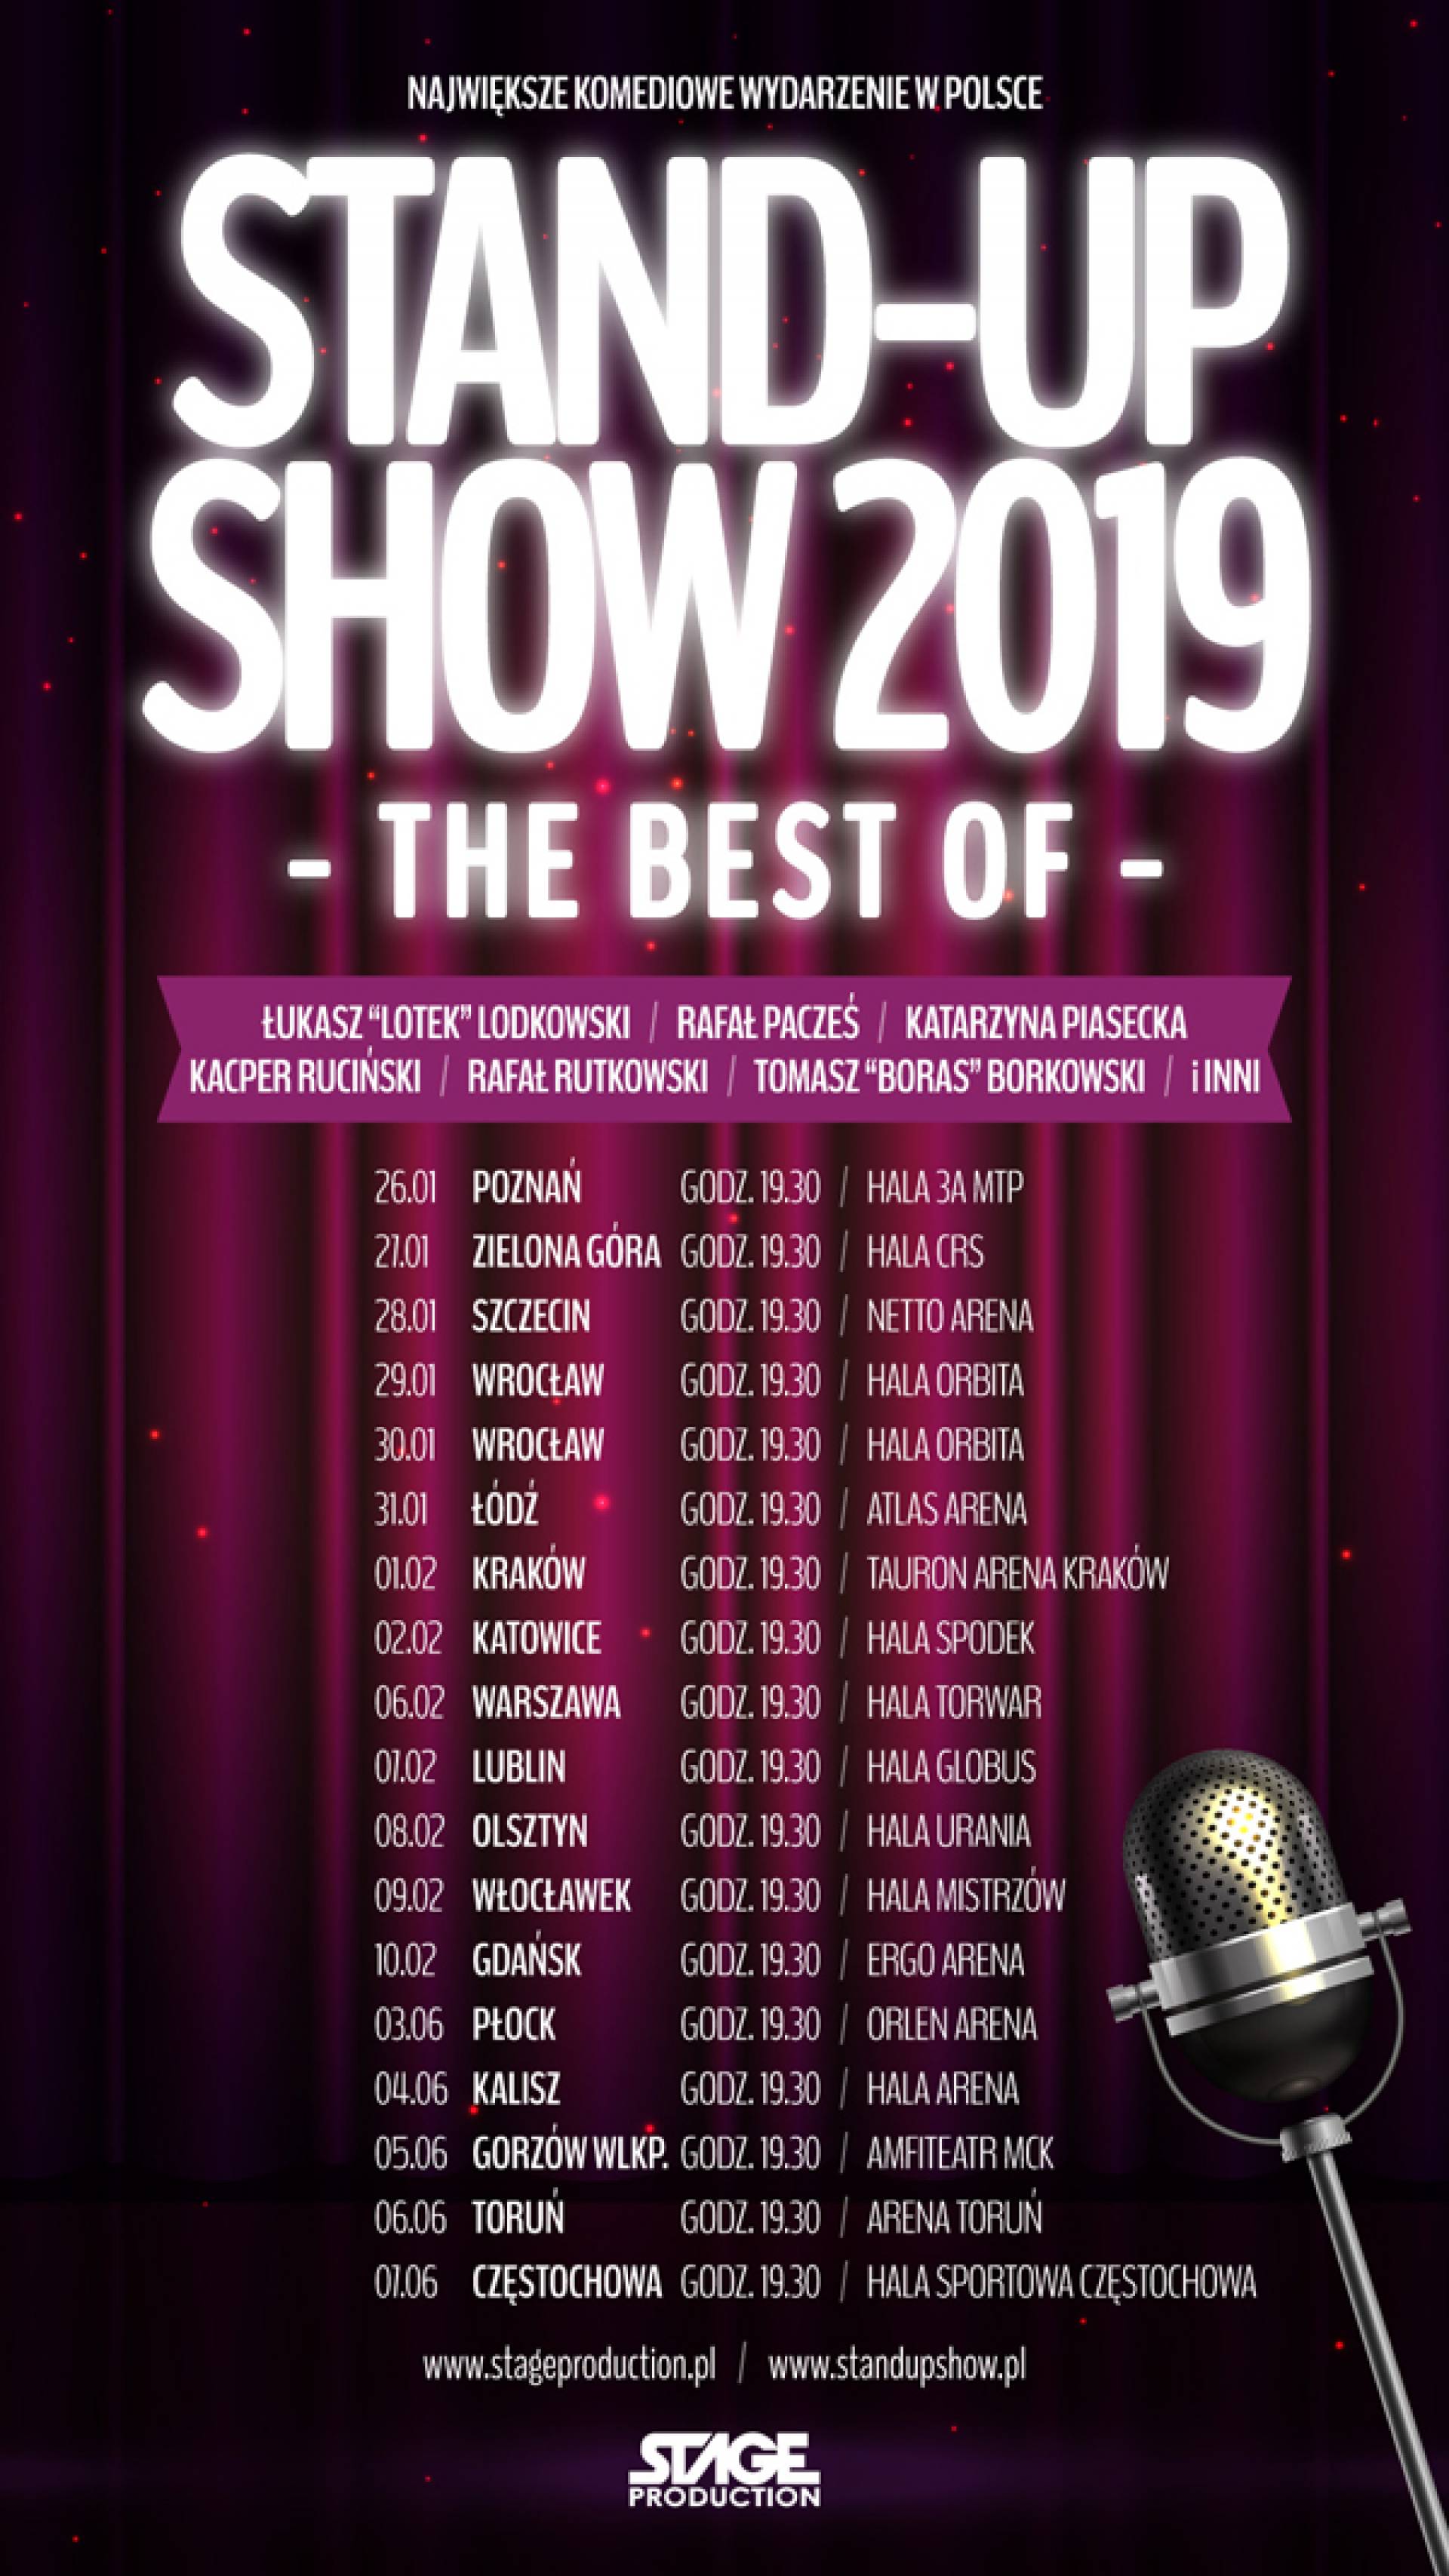 Kraków: Stand-up Show 2019 - The best of - TAURON Arena Kraków